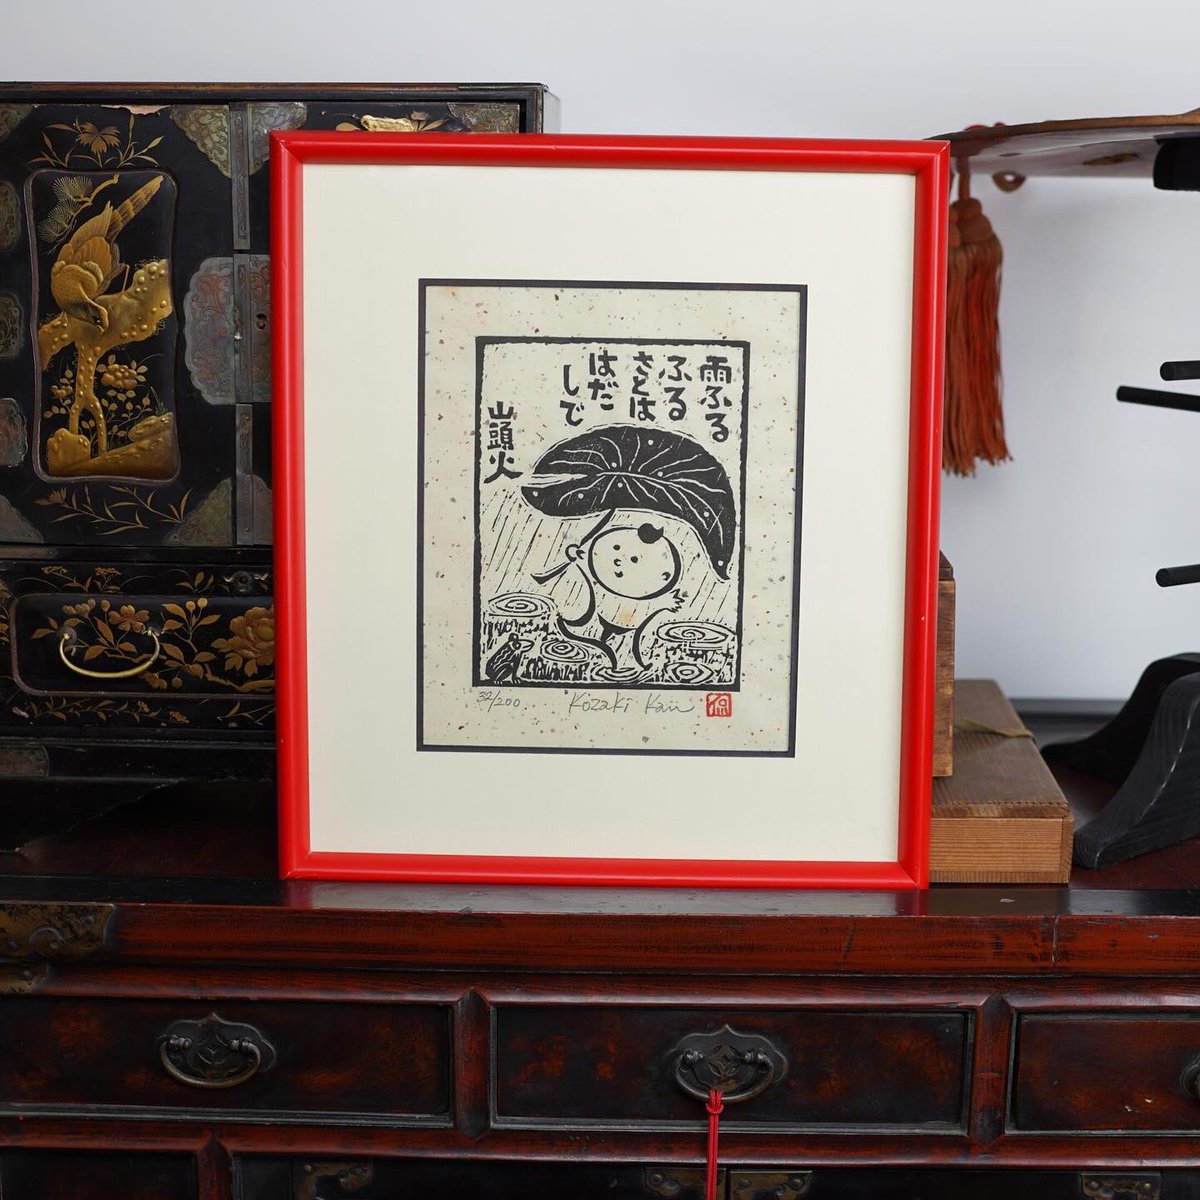 Estampe de Kan Kozaki représentant un garçon sous la pluie avec un poème de Santoka « 雨ふるさとは はだし » (Marcher pieds nus dans sa ville natale pluvieuse)
XIXème s.
Signée et numérotée 32/200.

kogeiya.com/objet-art-japo…

#art #japan #japaneseart #artjaponais #japon